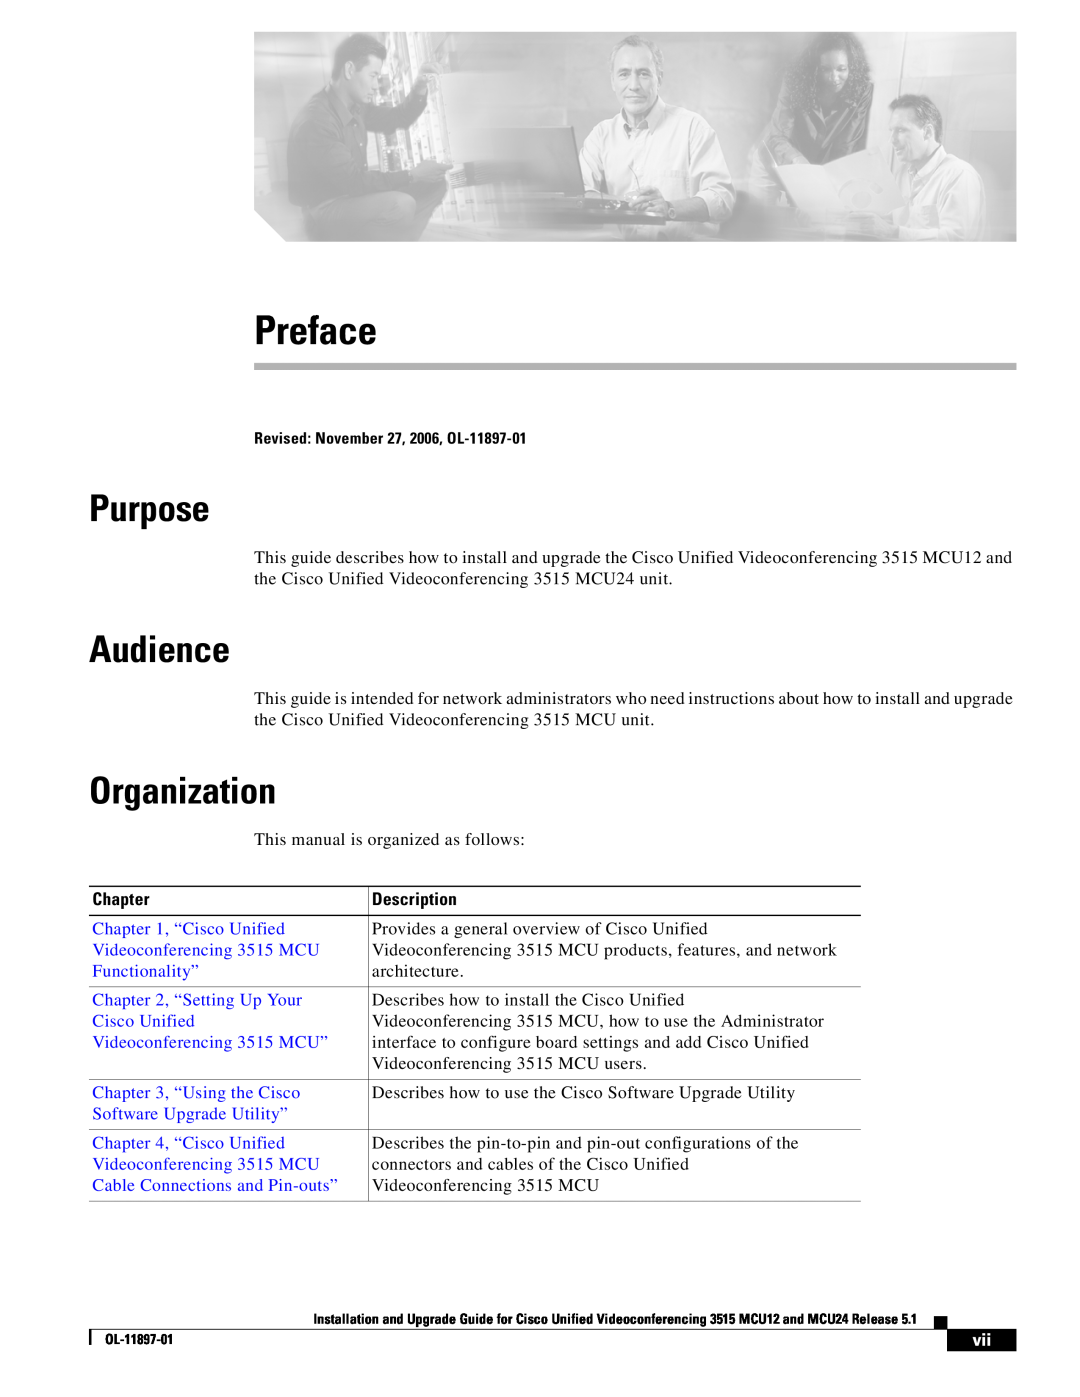 Cisco Systems MCU24 manual Preface, Purpose, Audience, Organization 